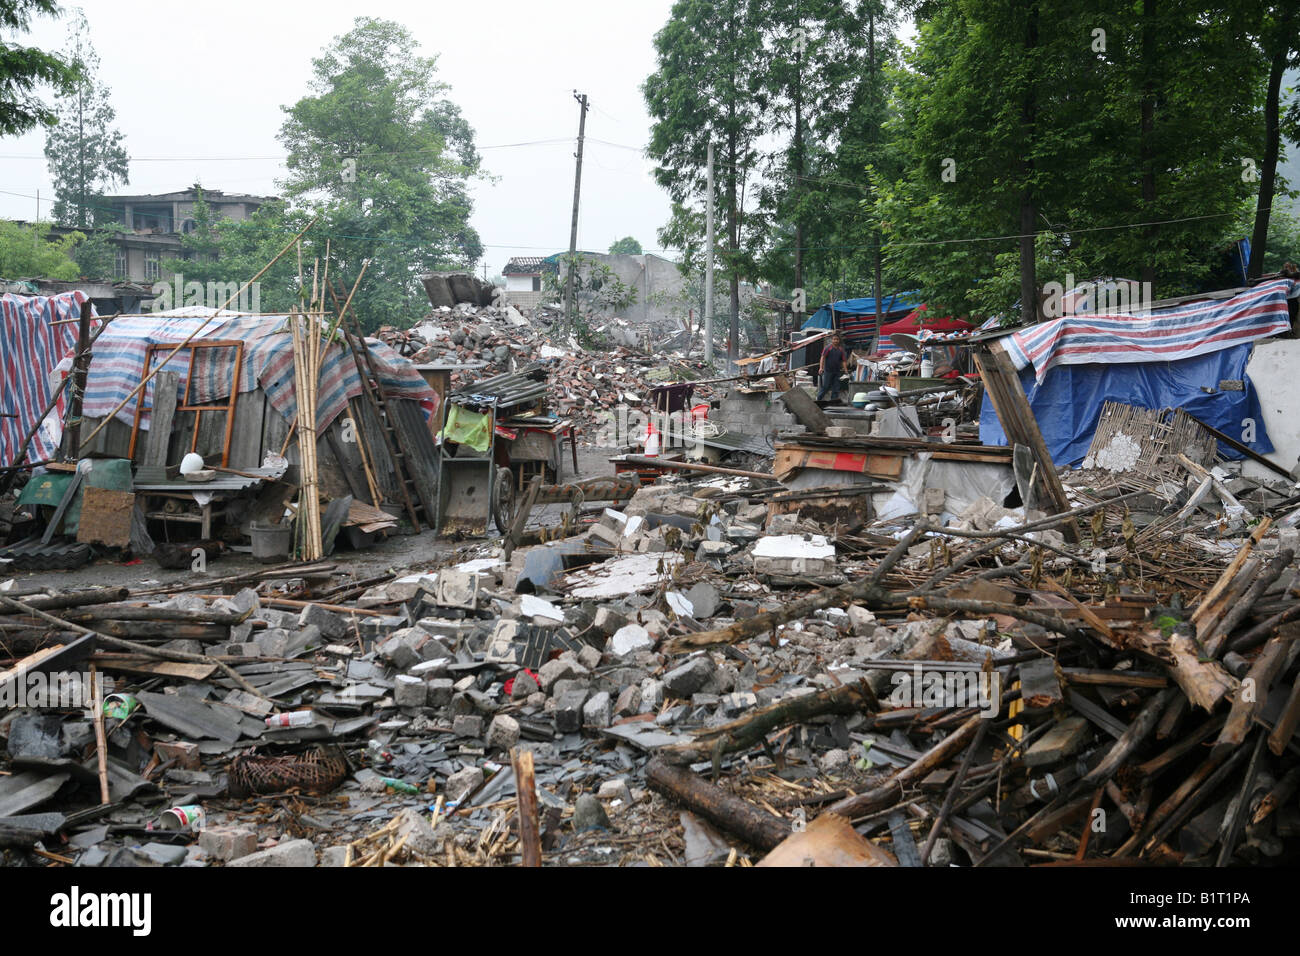 Zerstörte Häuser liegen in Trümmern in Pengzhou, nach dem Sichuan-Erdbeben vom 12. Mai 2008, China Stockfoto